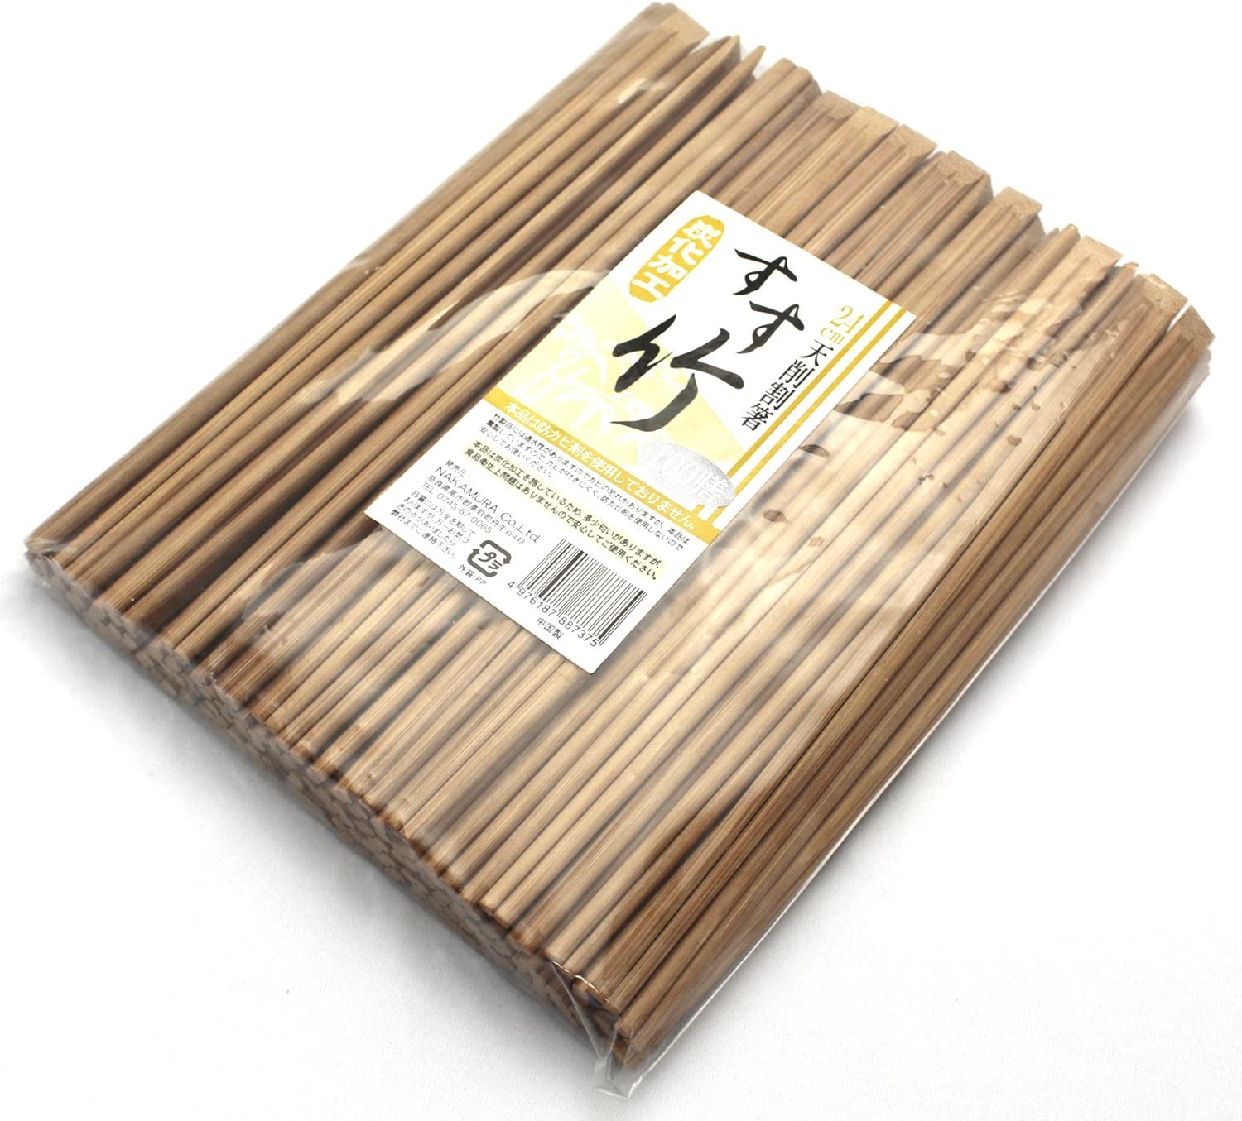 中村 割り箸 すす竹 天削 100膳 24cmの商品画像サムネ2 